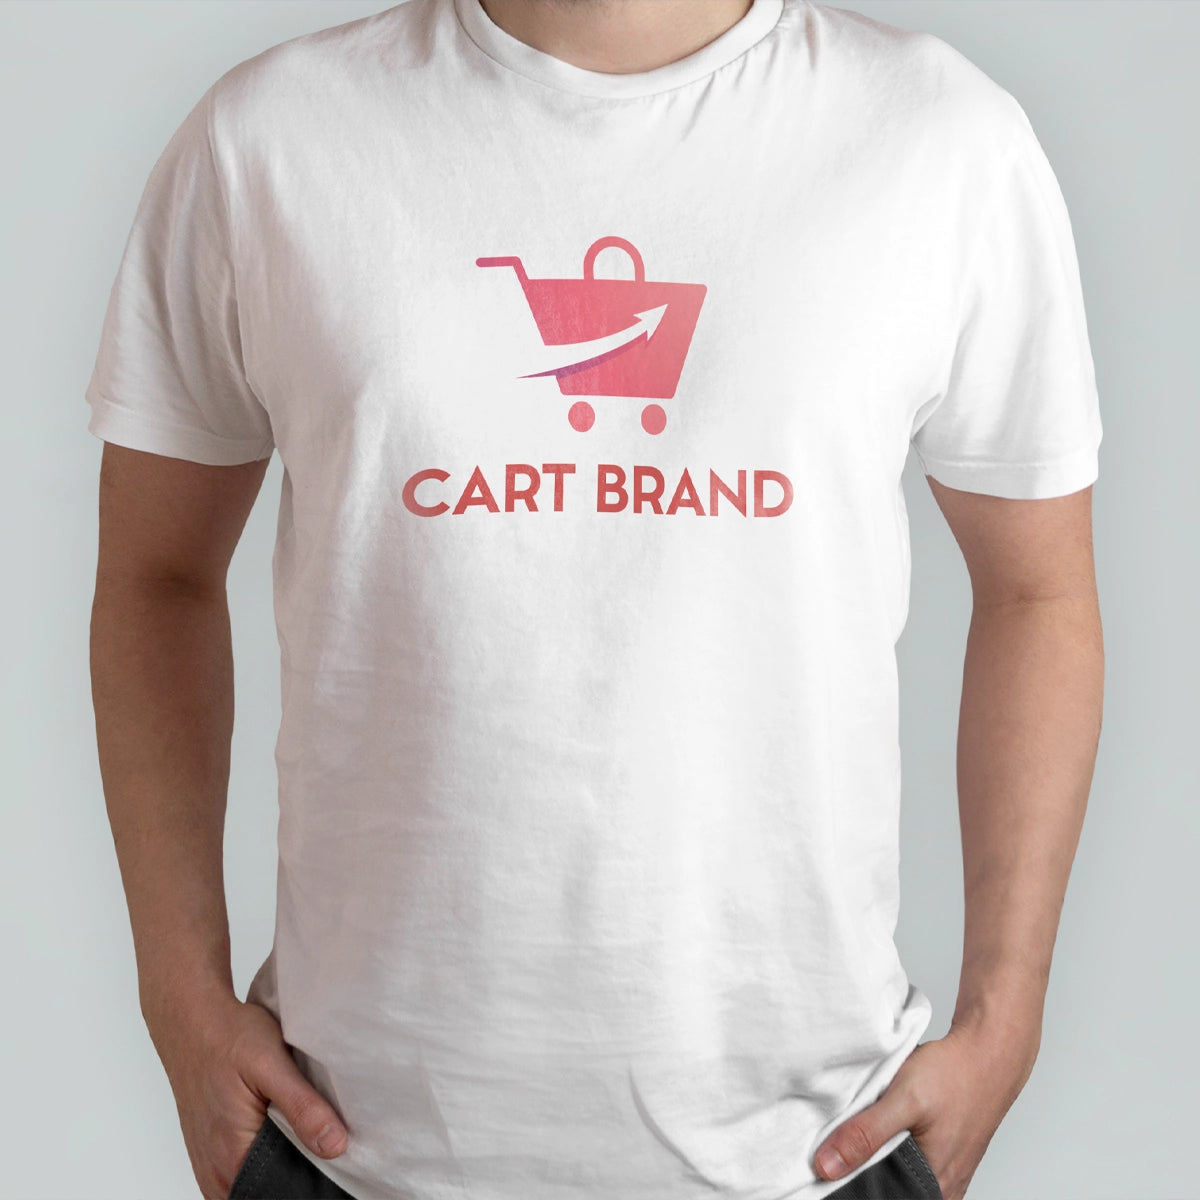 cartbrand.com